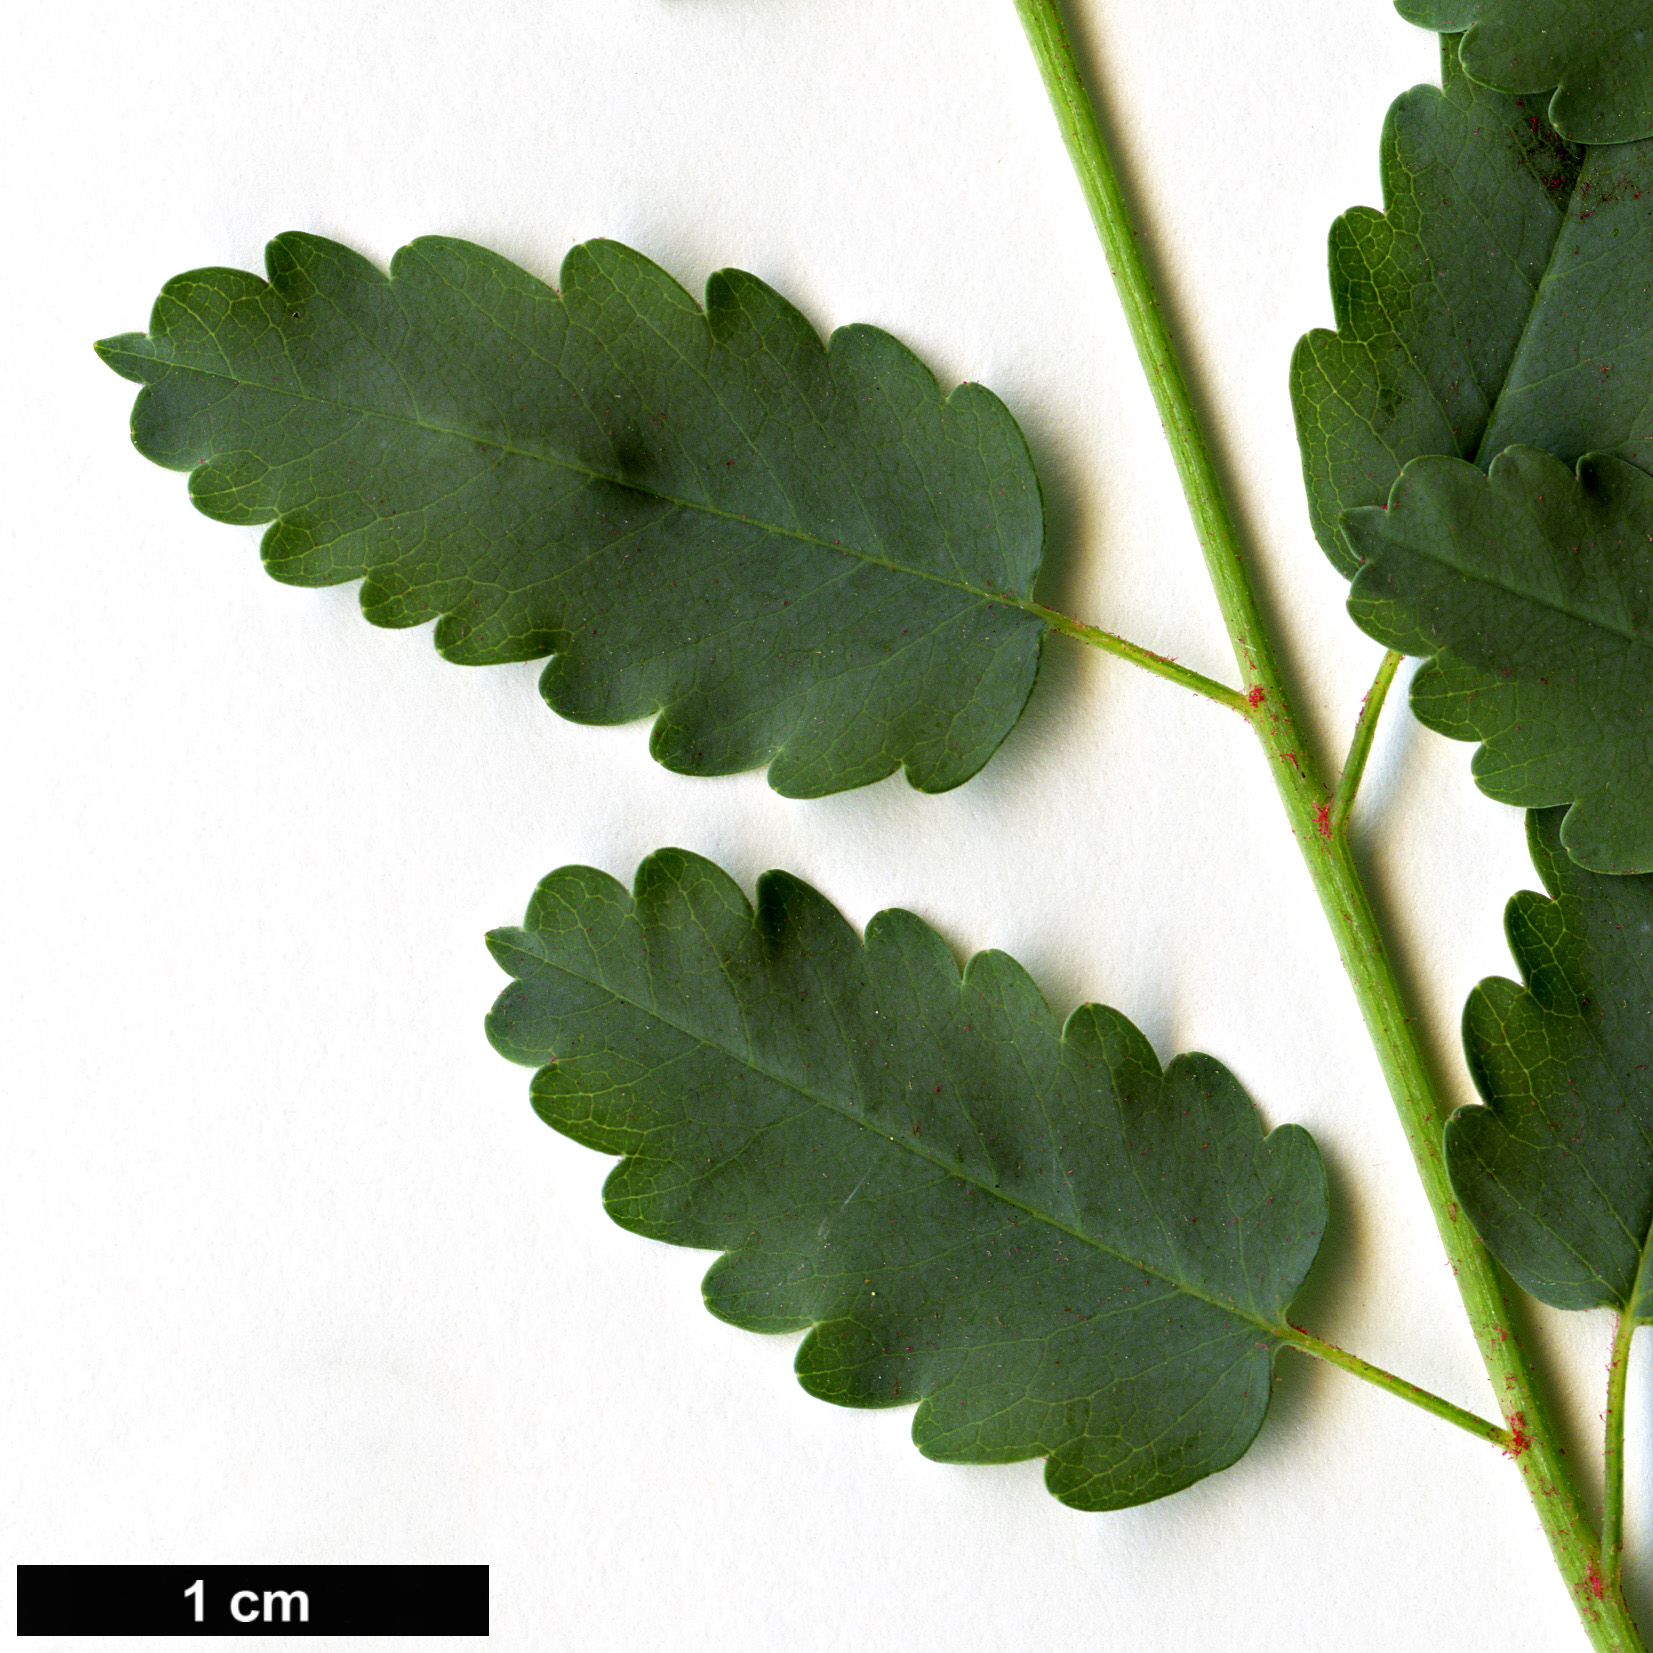 High resolution image: Family: Rosaceae - Genus: Marcetella - Taxon: moquiniana